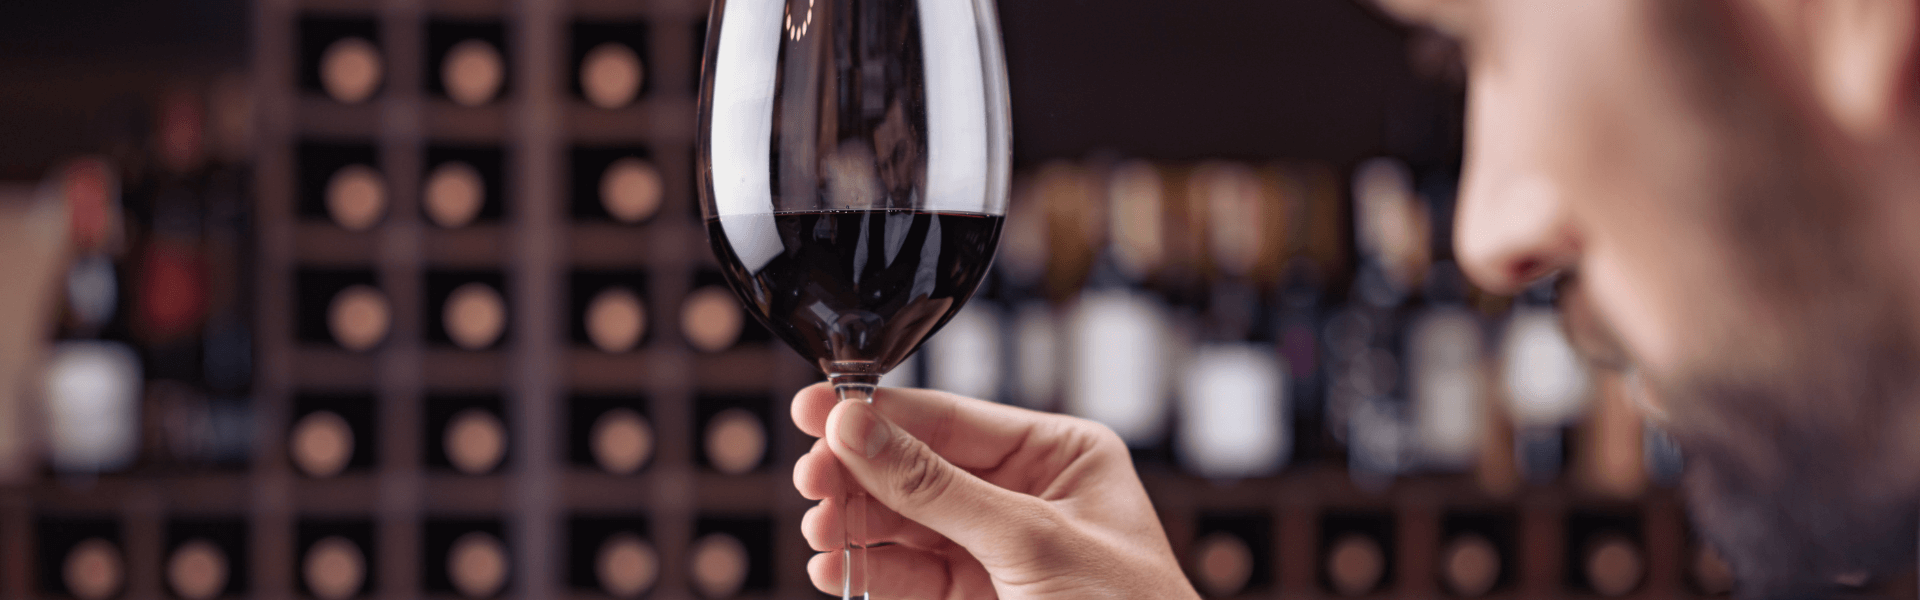 Catarinense fica em 3º lugar por título de melhor sommelier de vinhos brasileiros